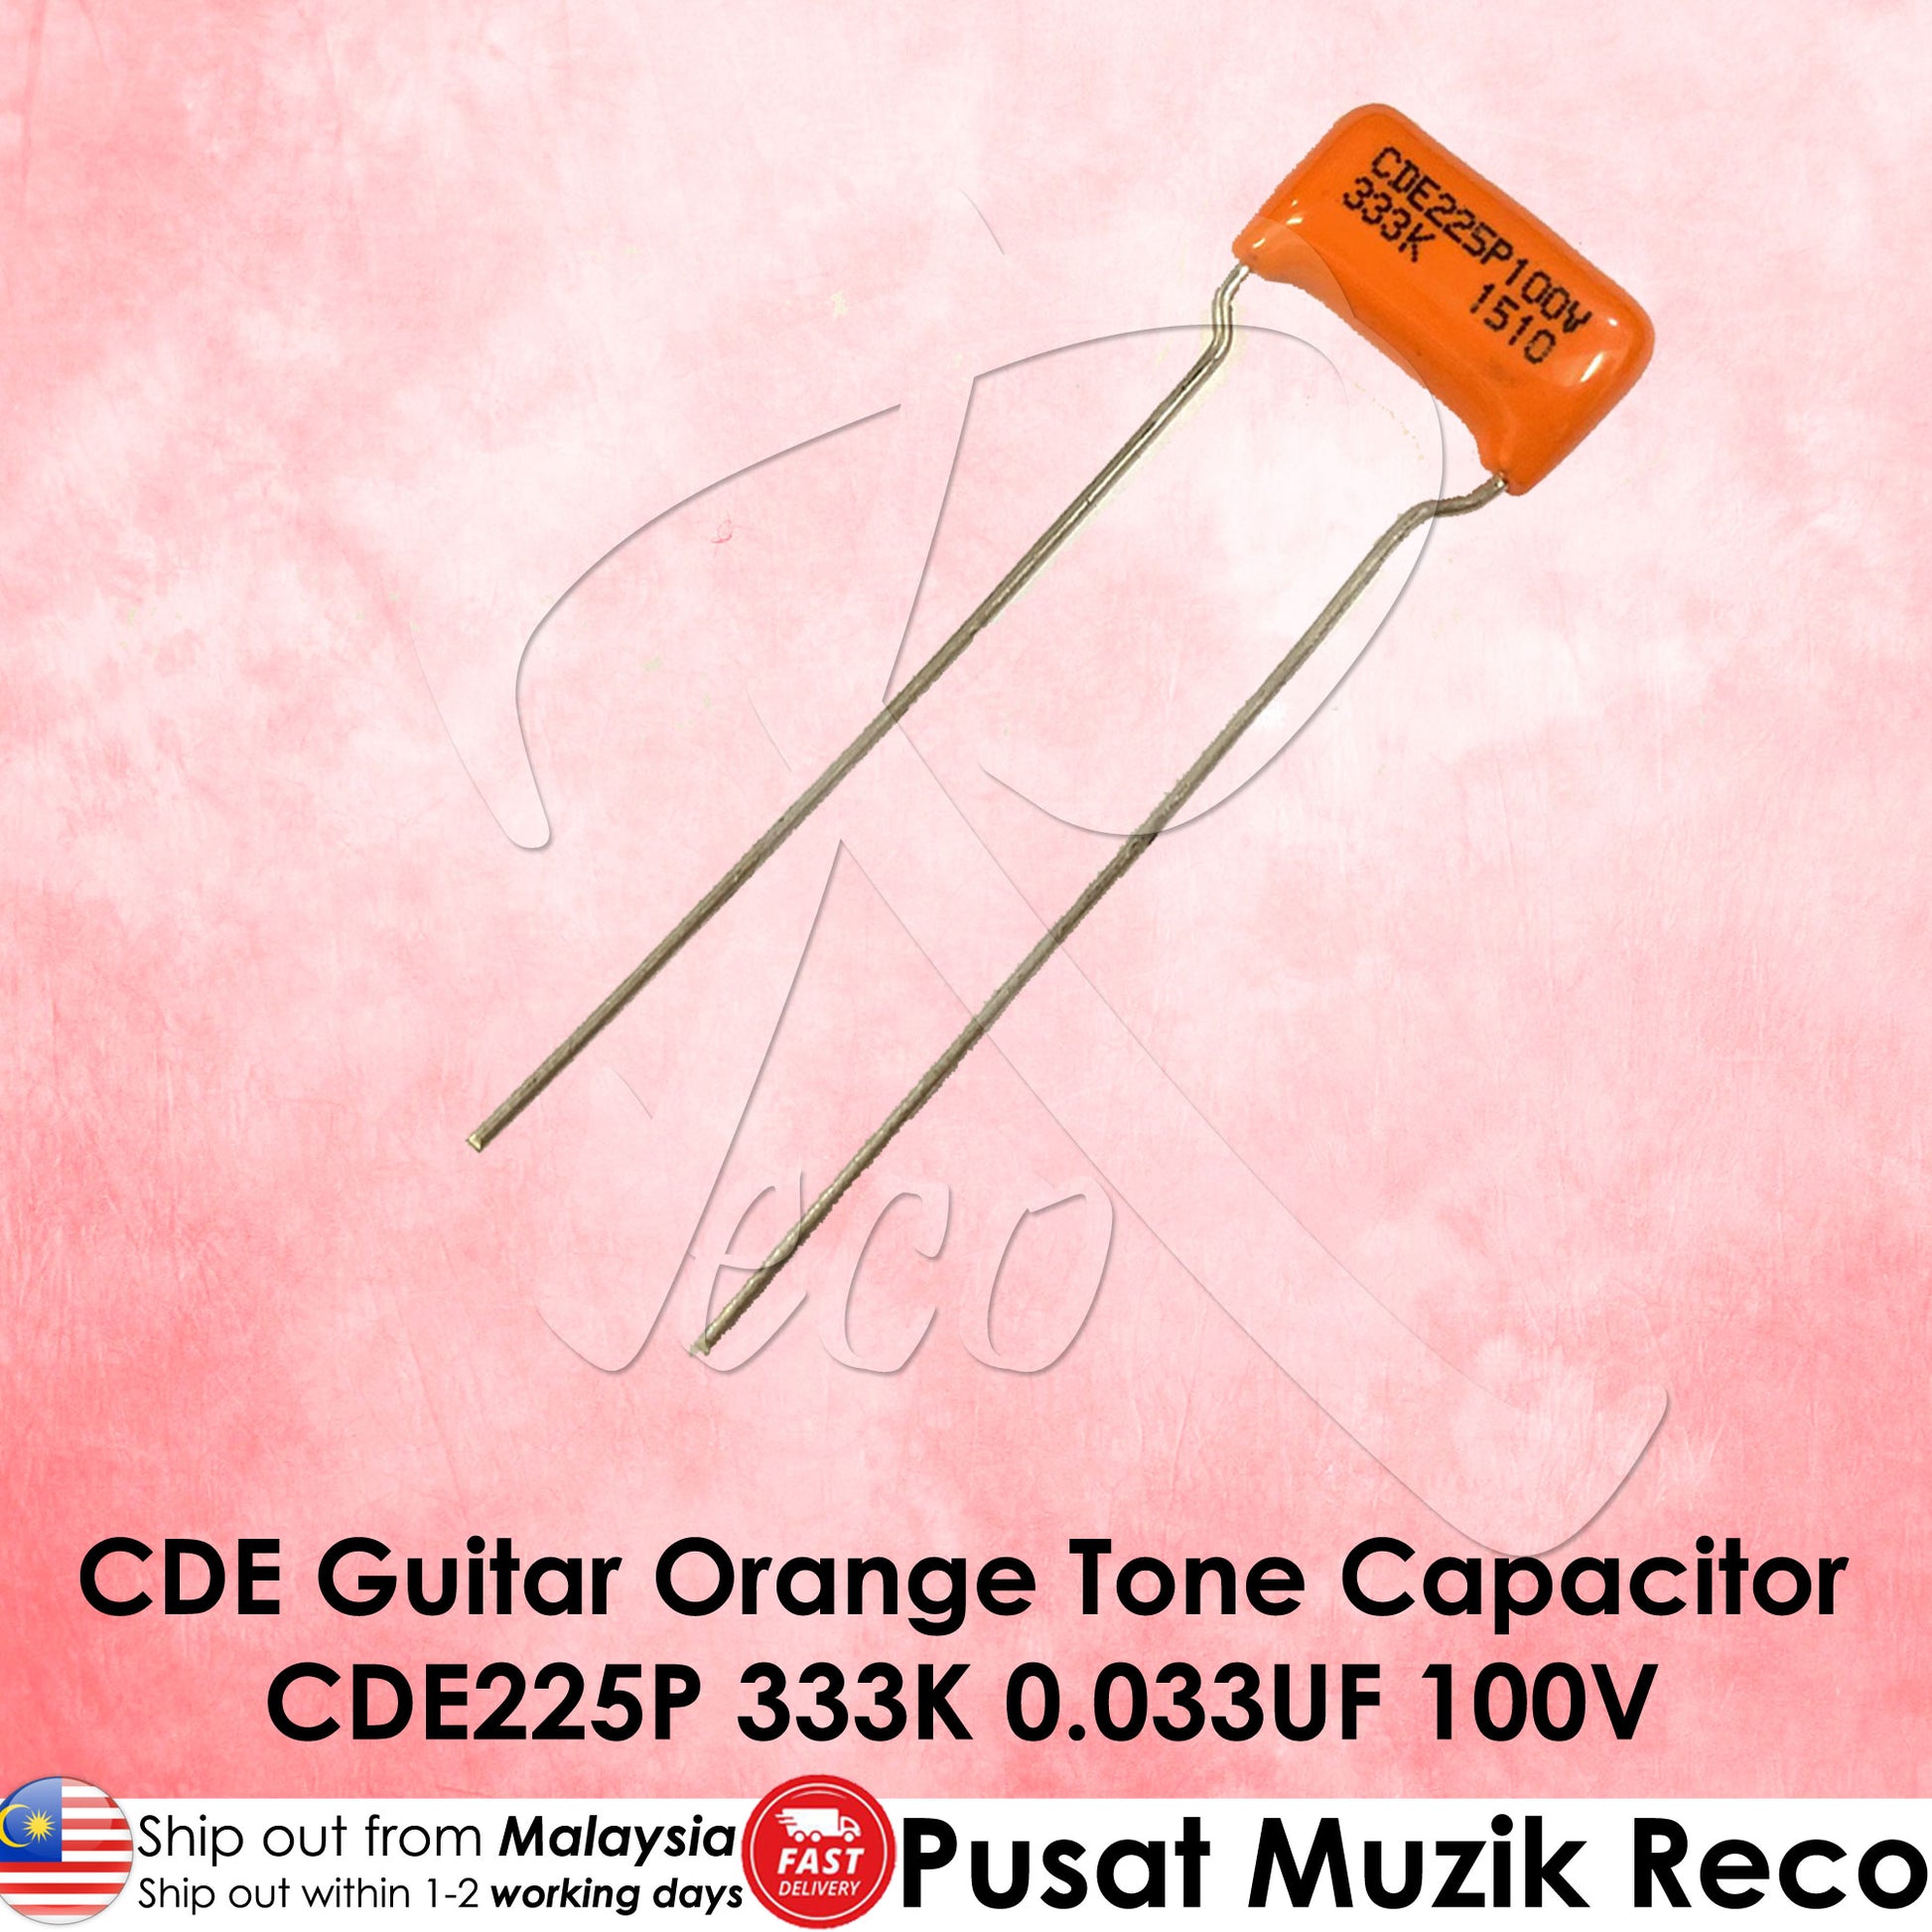 Sprague Guitar Orange Drop Capacitor Tone Caps CDE225P 333K 0.033UF 100V - Reco Music Malaysia